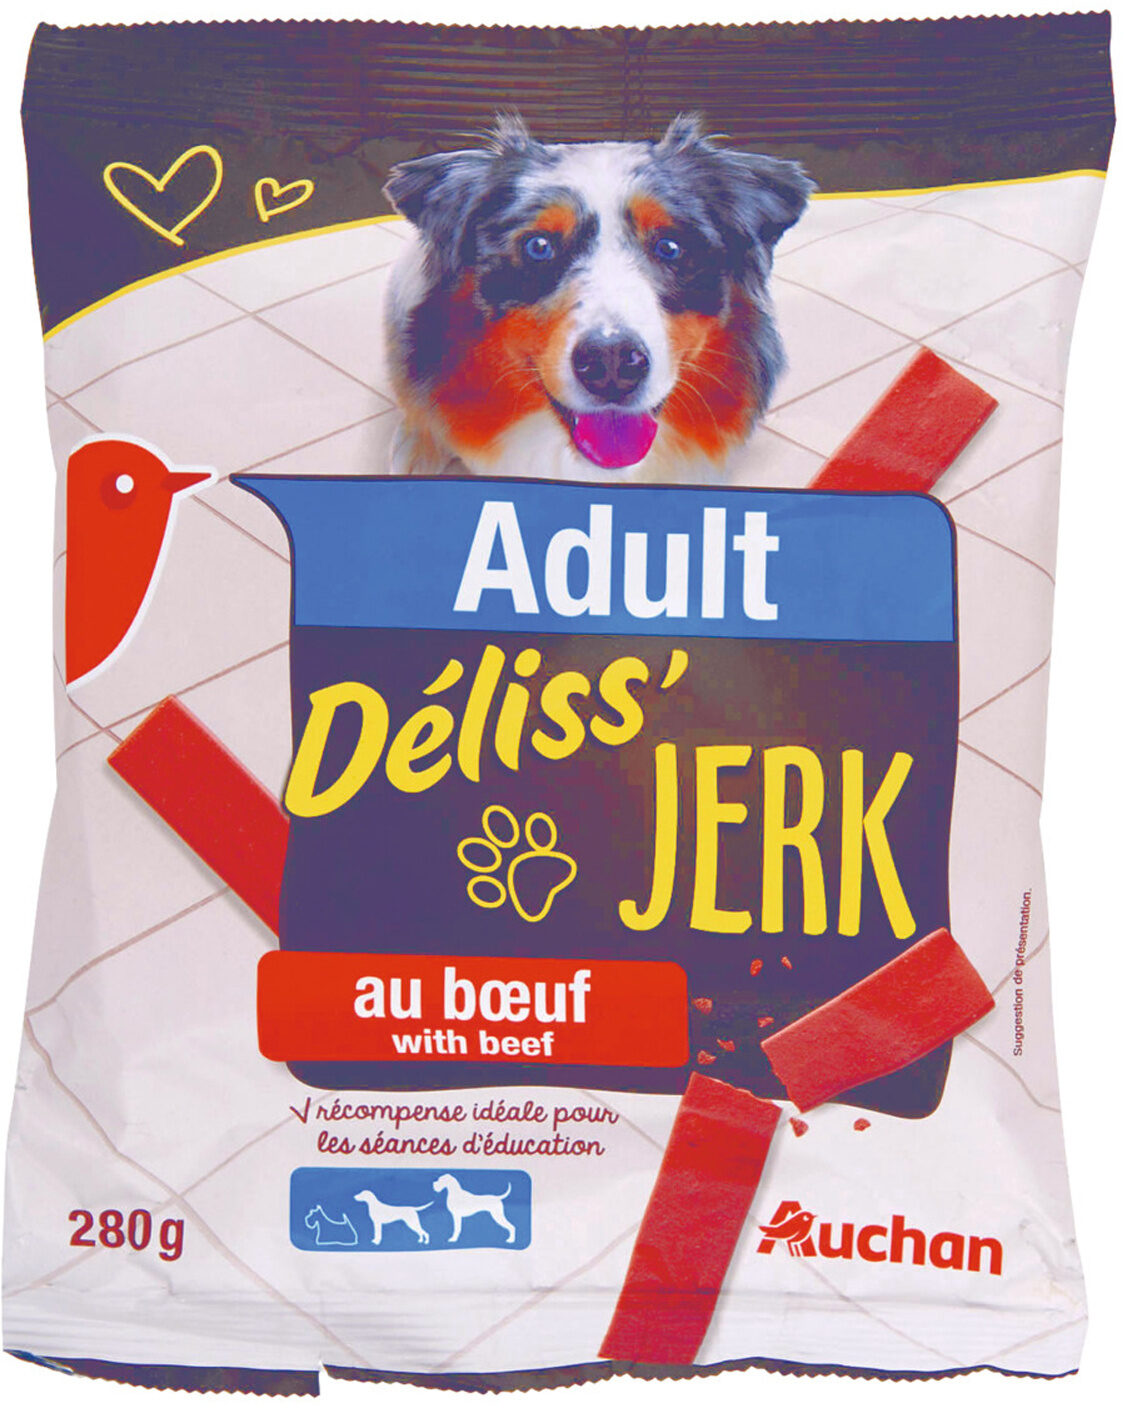 Adult - Déliss'Jerk - au boeuf - Product - fr